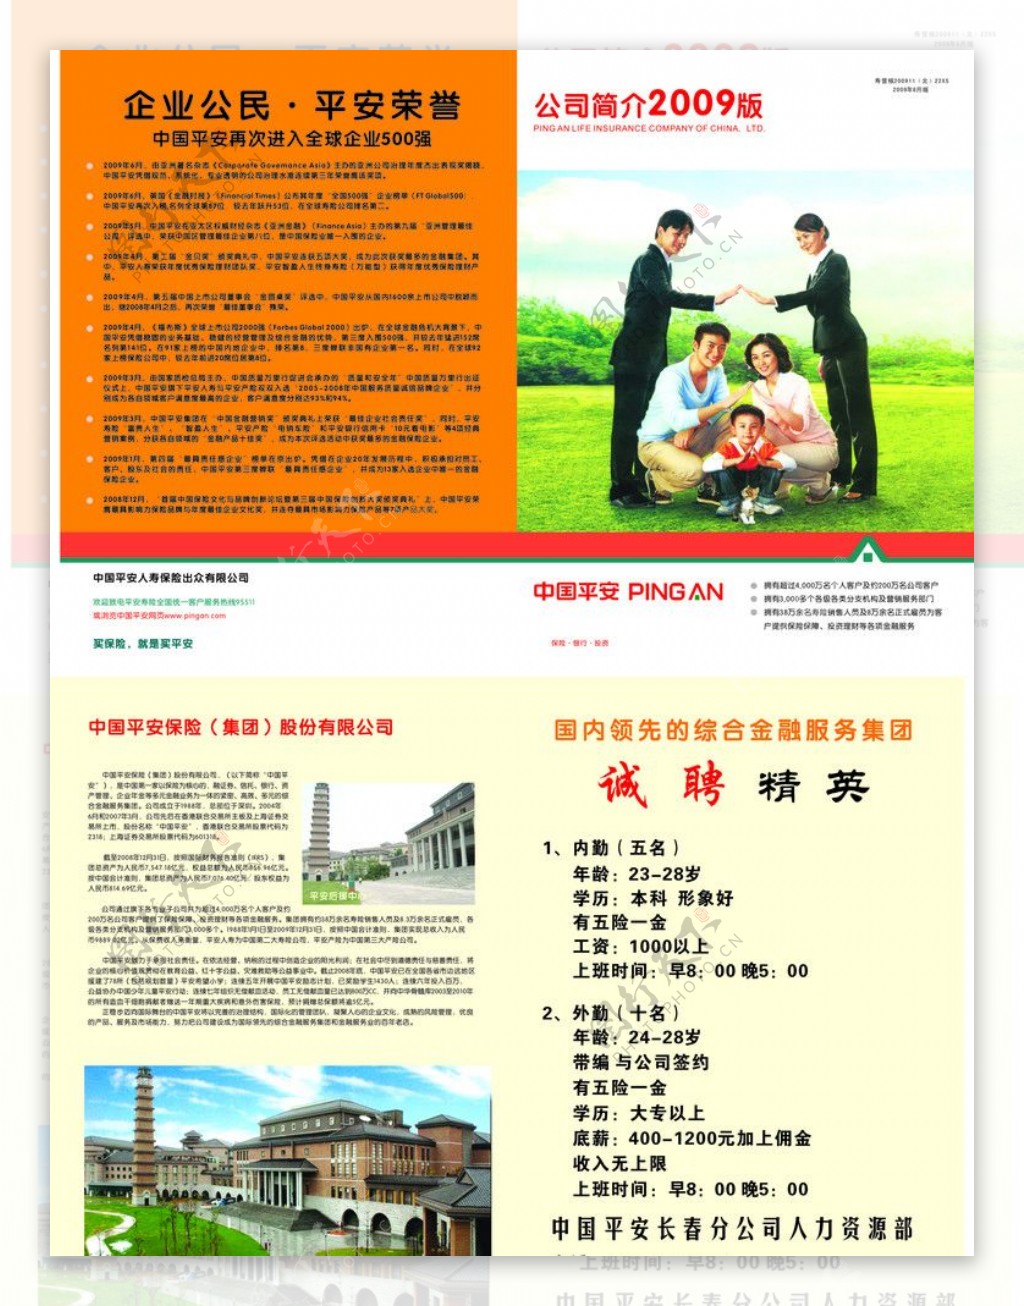 中国平安保险公司宣传彩页图片